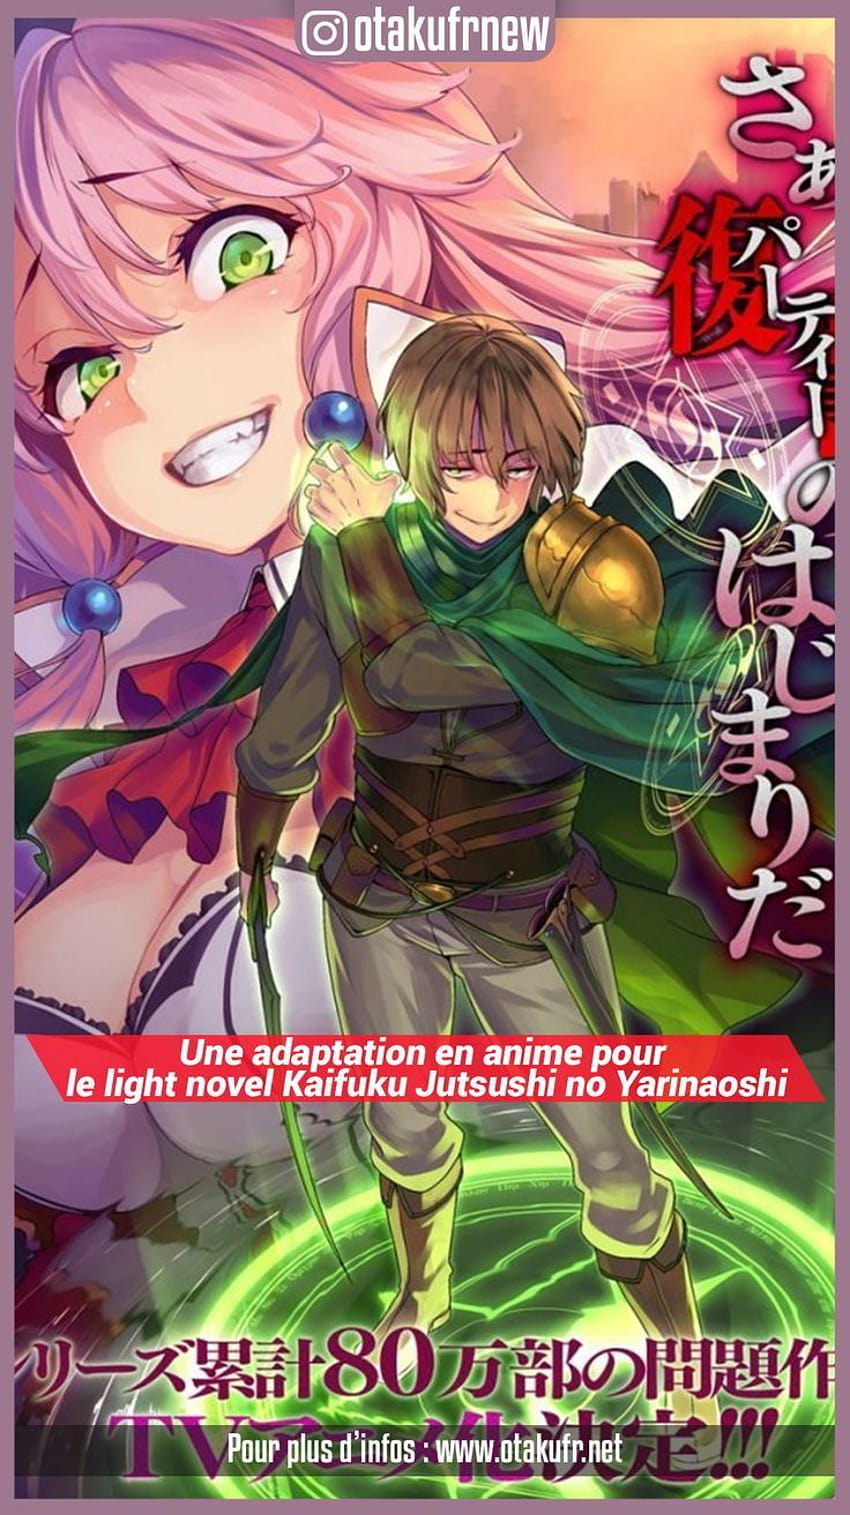 Manga Volume 8, Kaifuku Jutsushi no Yarinaoshi Wiki